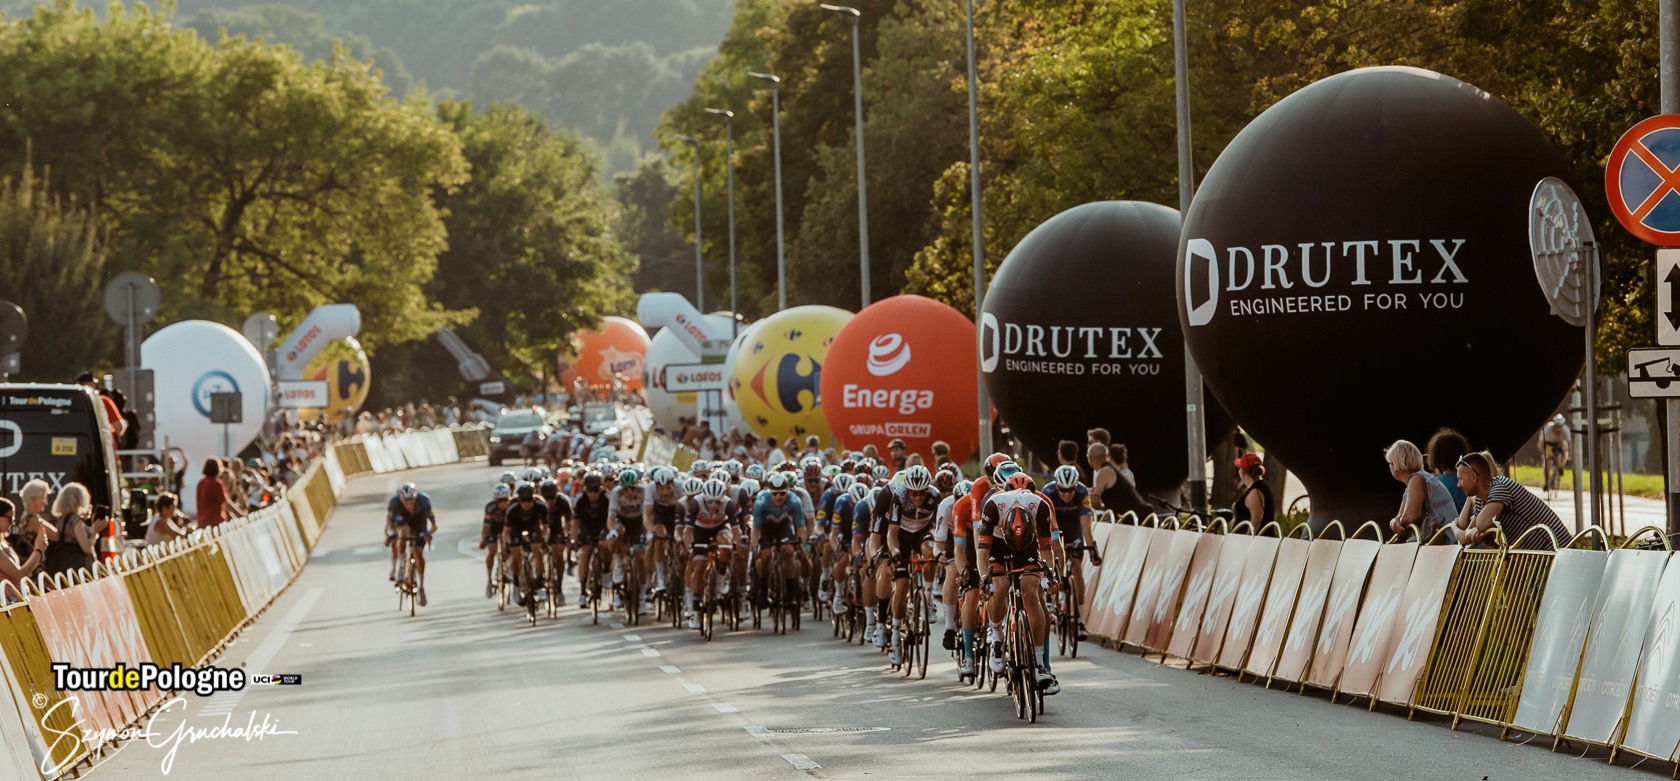 DRUTEX je opäť Oficiálnym sponzorom Tour de Pologne